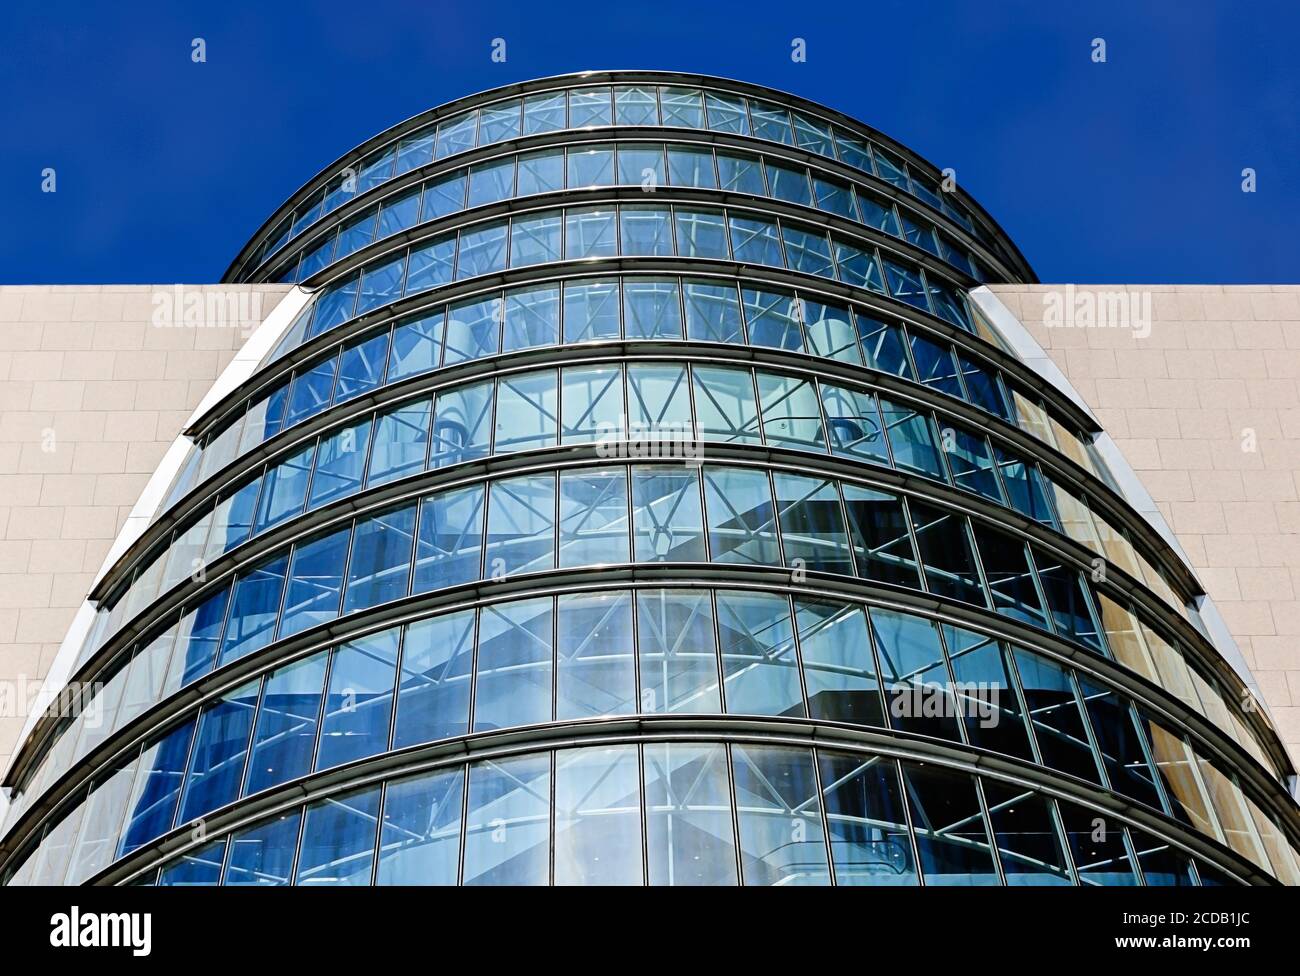 Blick auf das Convention Center Dublin (CCD), das vom irischen Architekten Kevin Roche entworfen wurde. Docklands. Dublin, Irland, Europa. Wolkenlos, Kopierbereich. Stockfoto